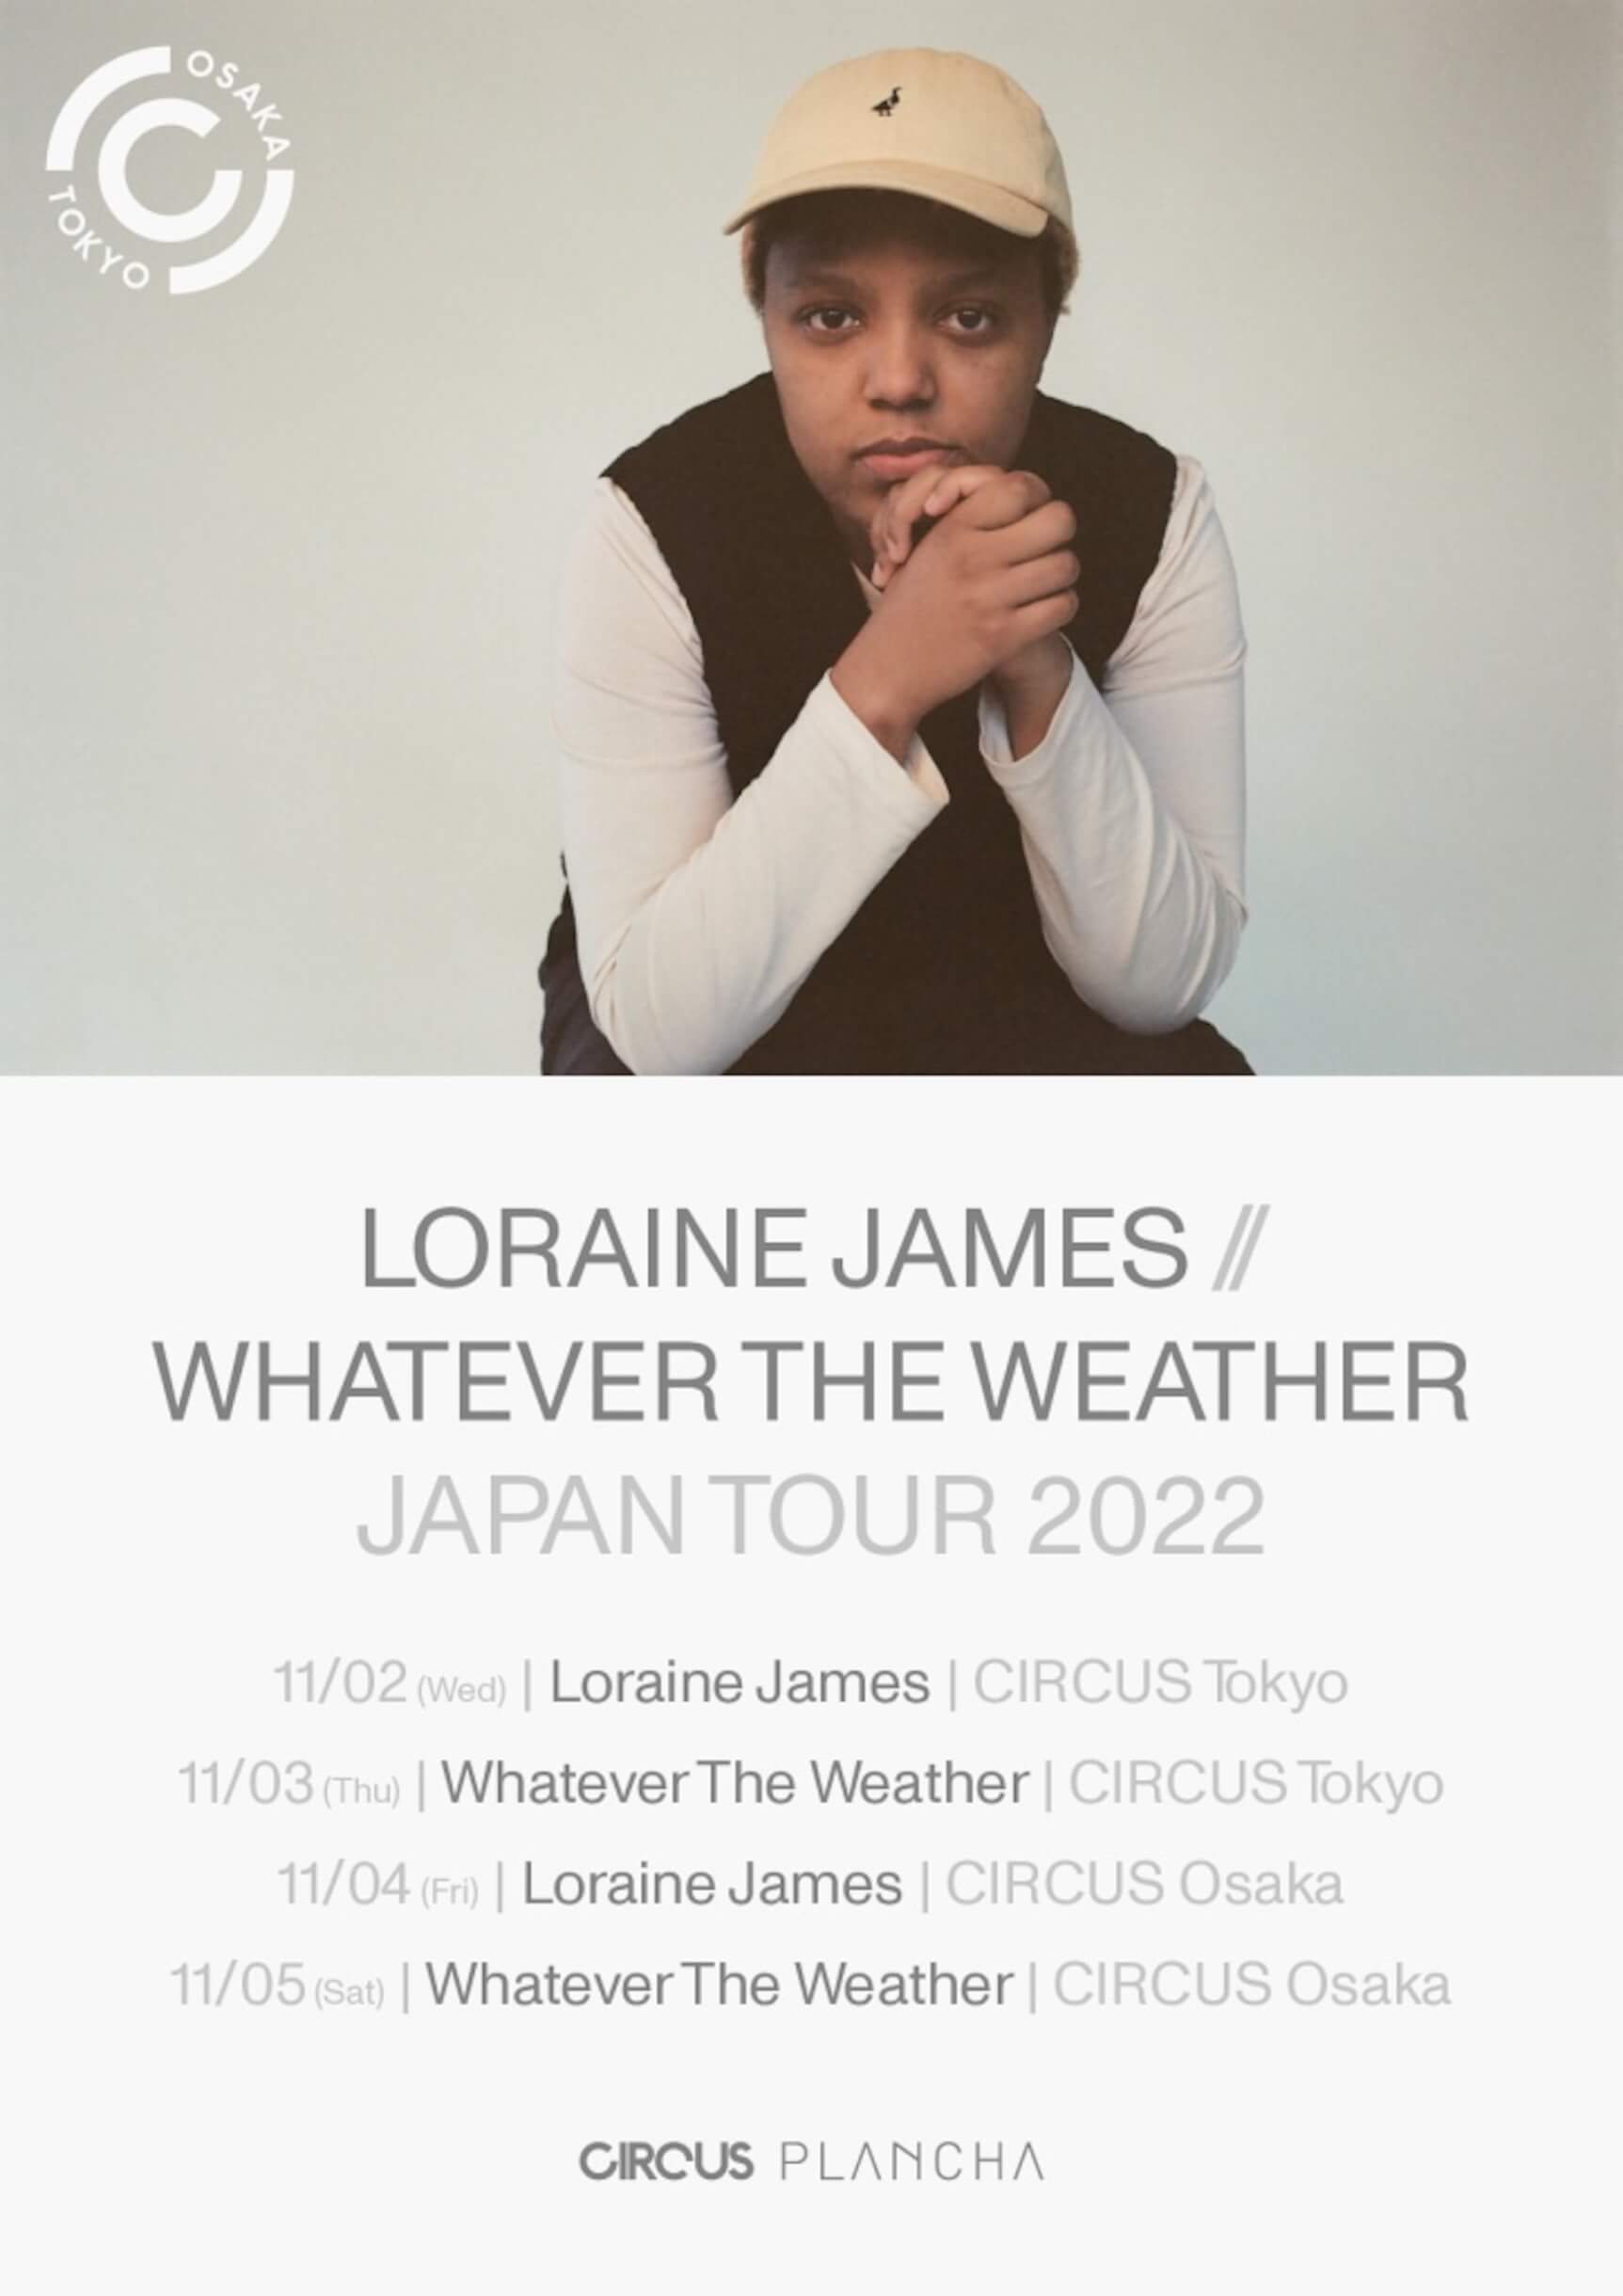 エレクトロ・ミュージック・シーンで注目を集めるプロデューサー、Loraine James // Whatever The Weatherの待望の初来日が決定 music220908-loraine-james-01